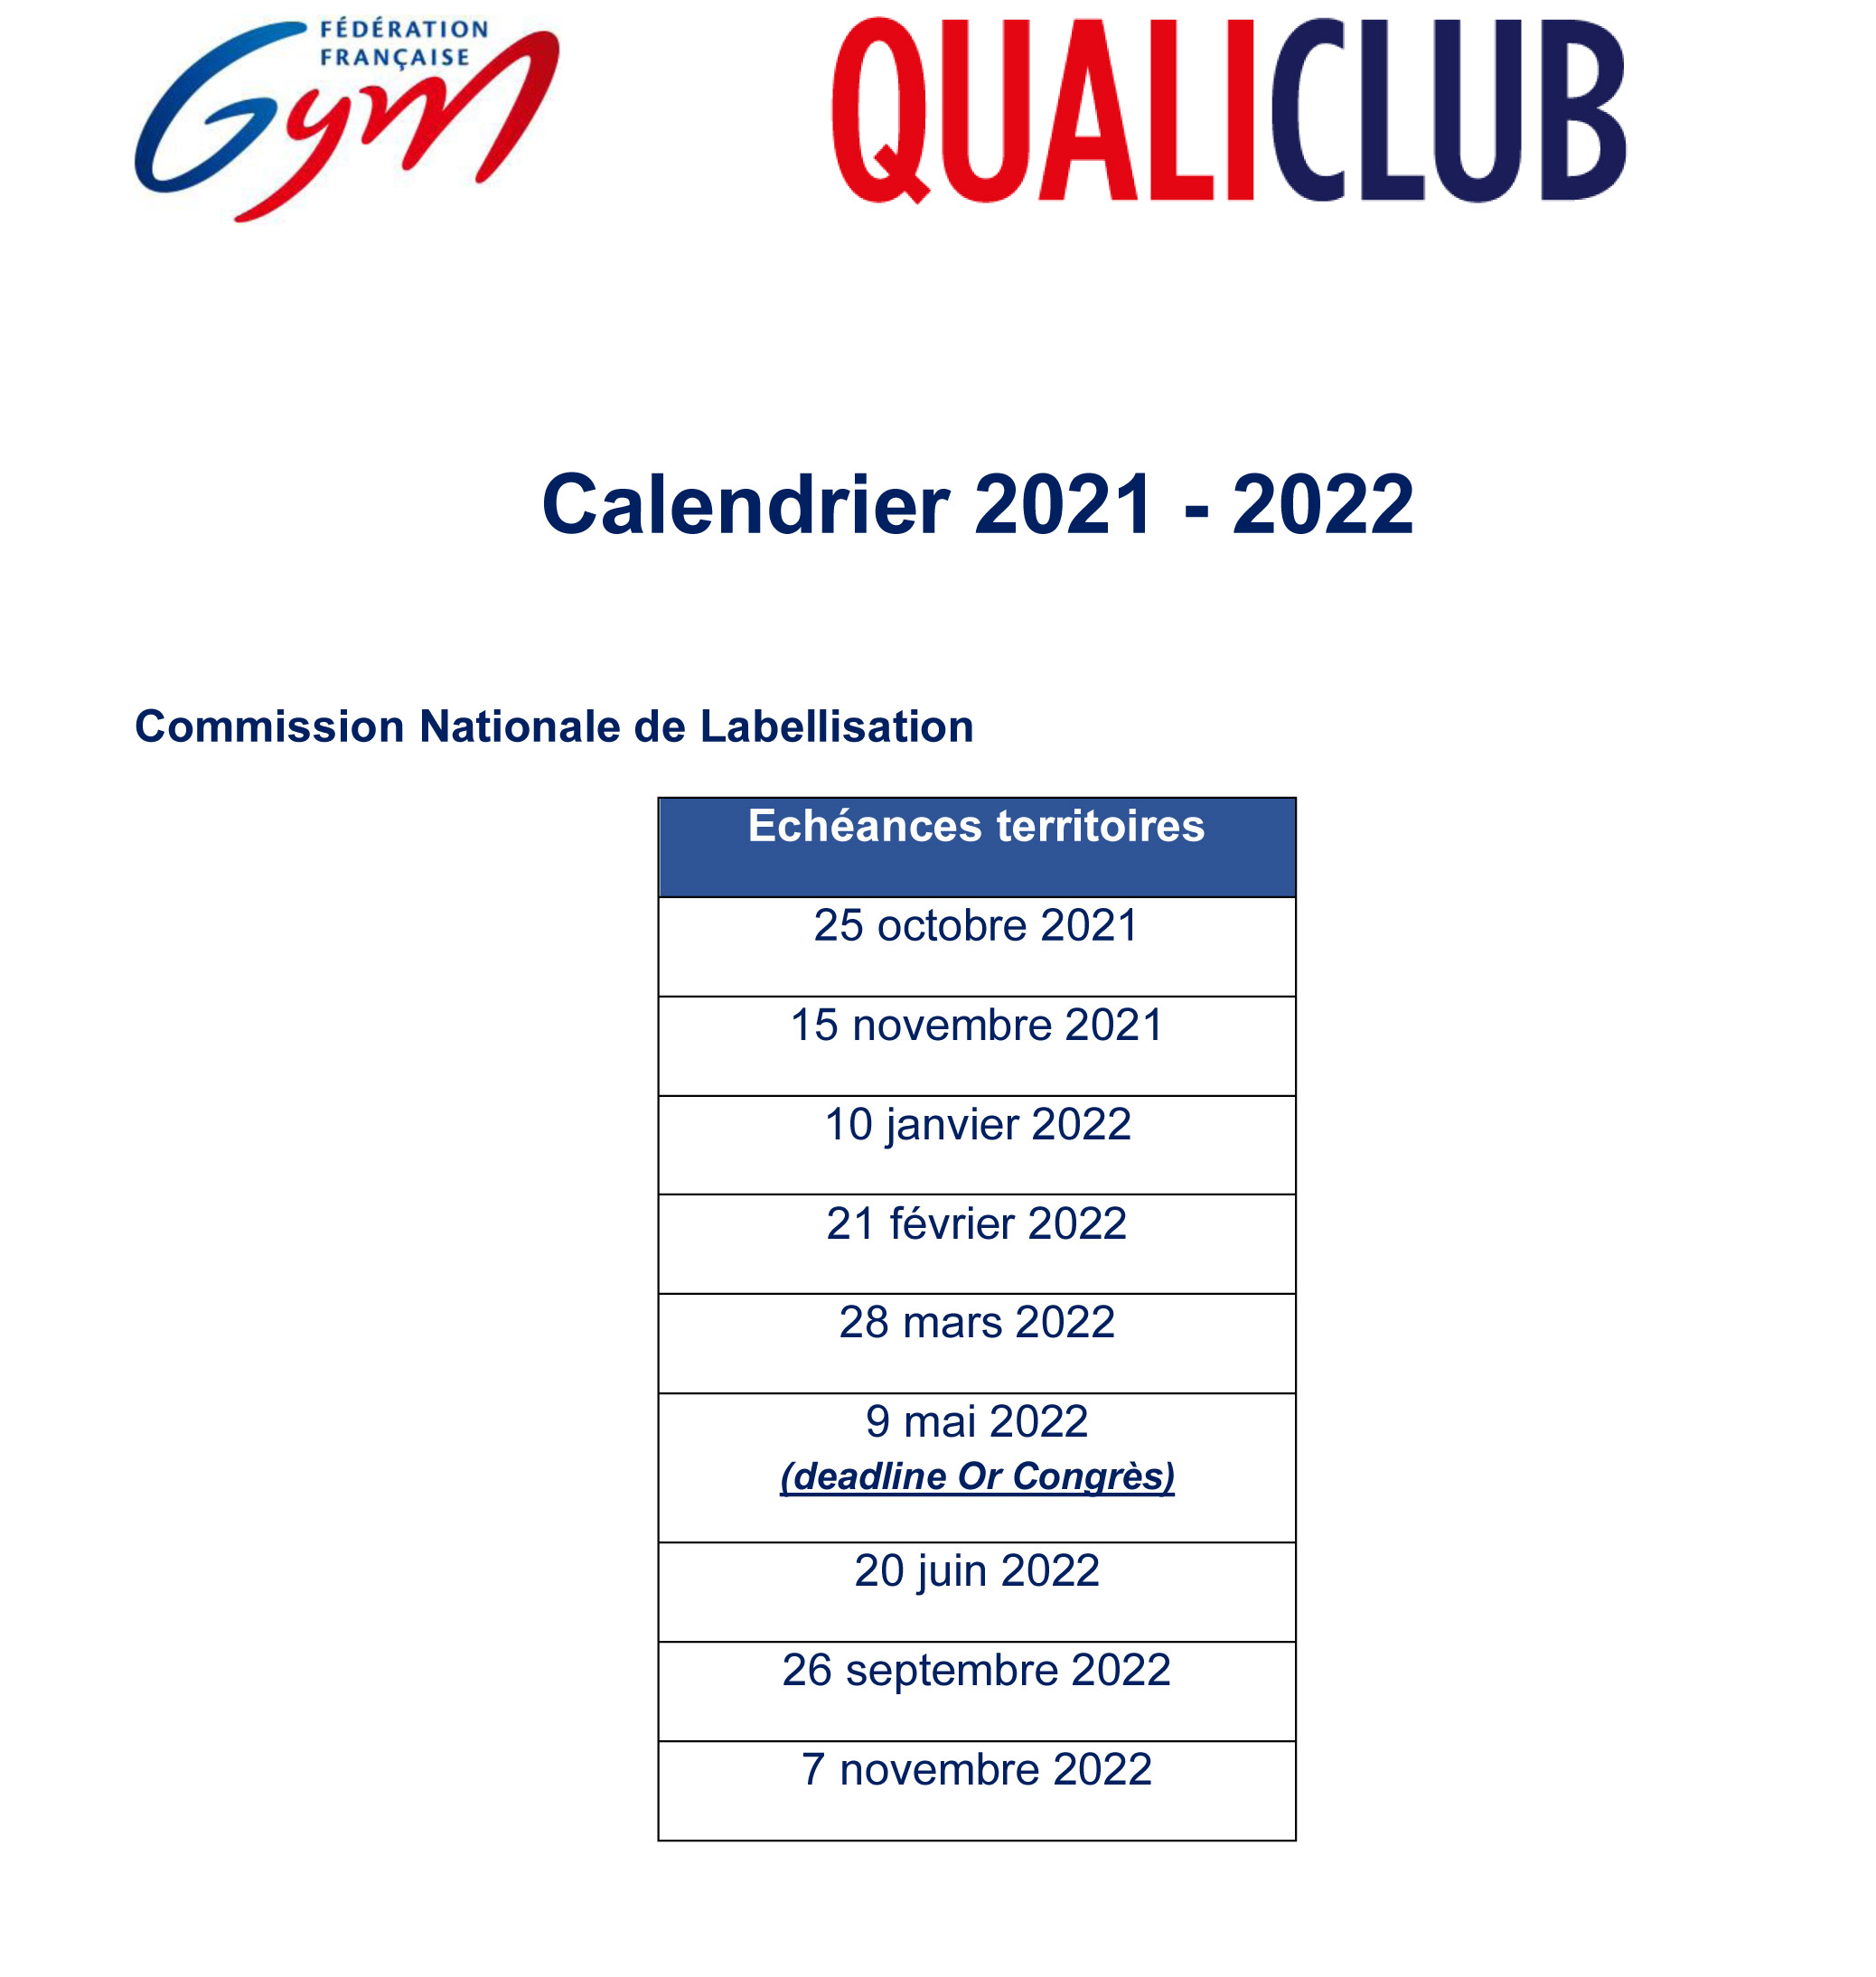 QUALICLUB - LES NOUVEAUX CLUBS RECONNUS & CALENDRIER 2021-22